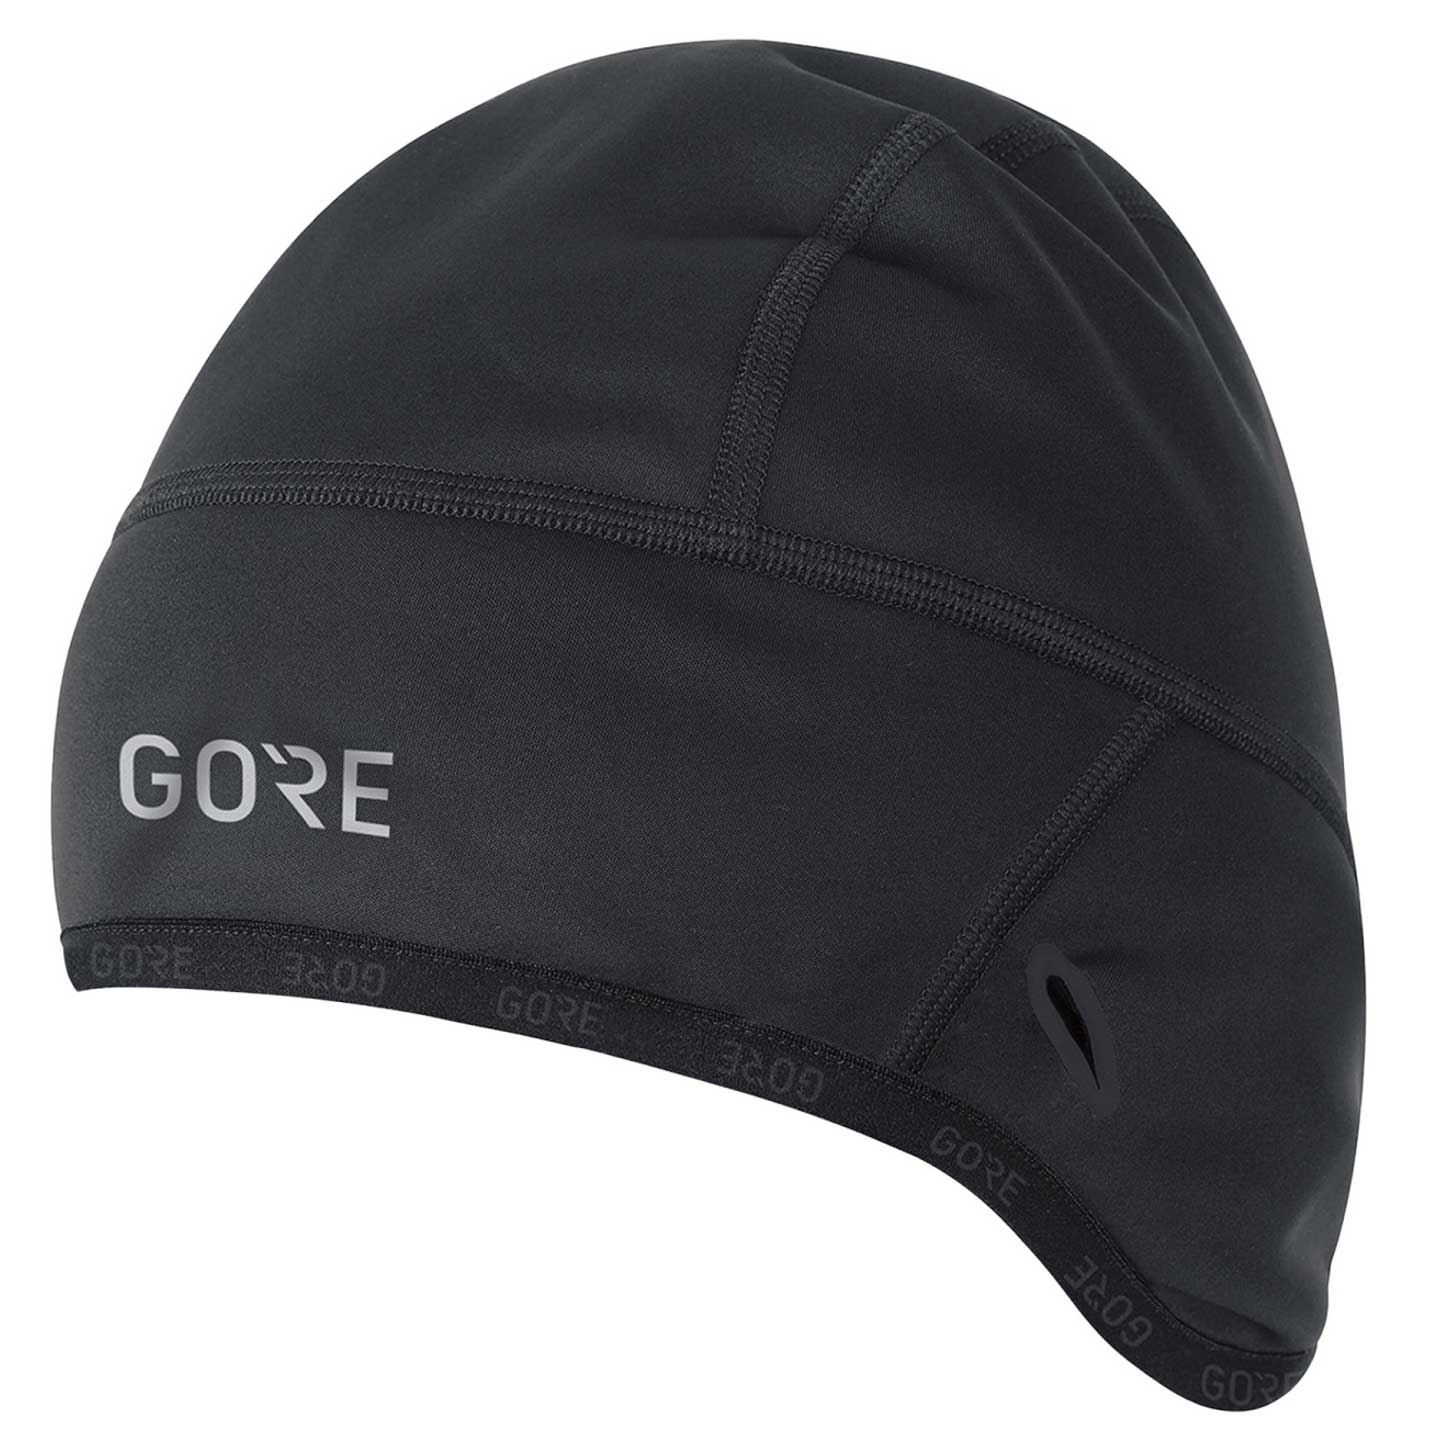 Produktbild von GOREWEAR M GORE® WINDSTOPPER® Thermo Mütze - schwarz 9900